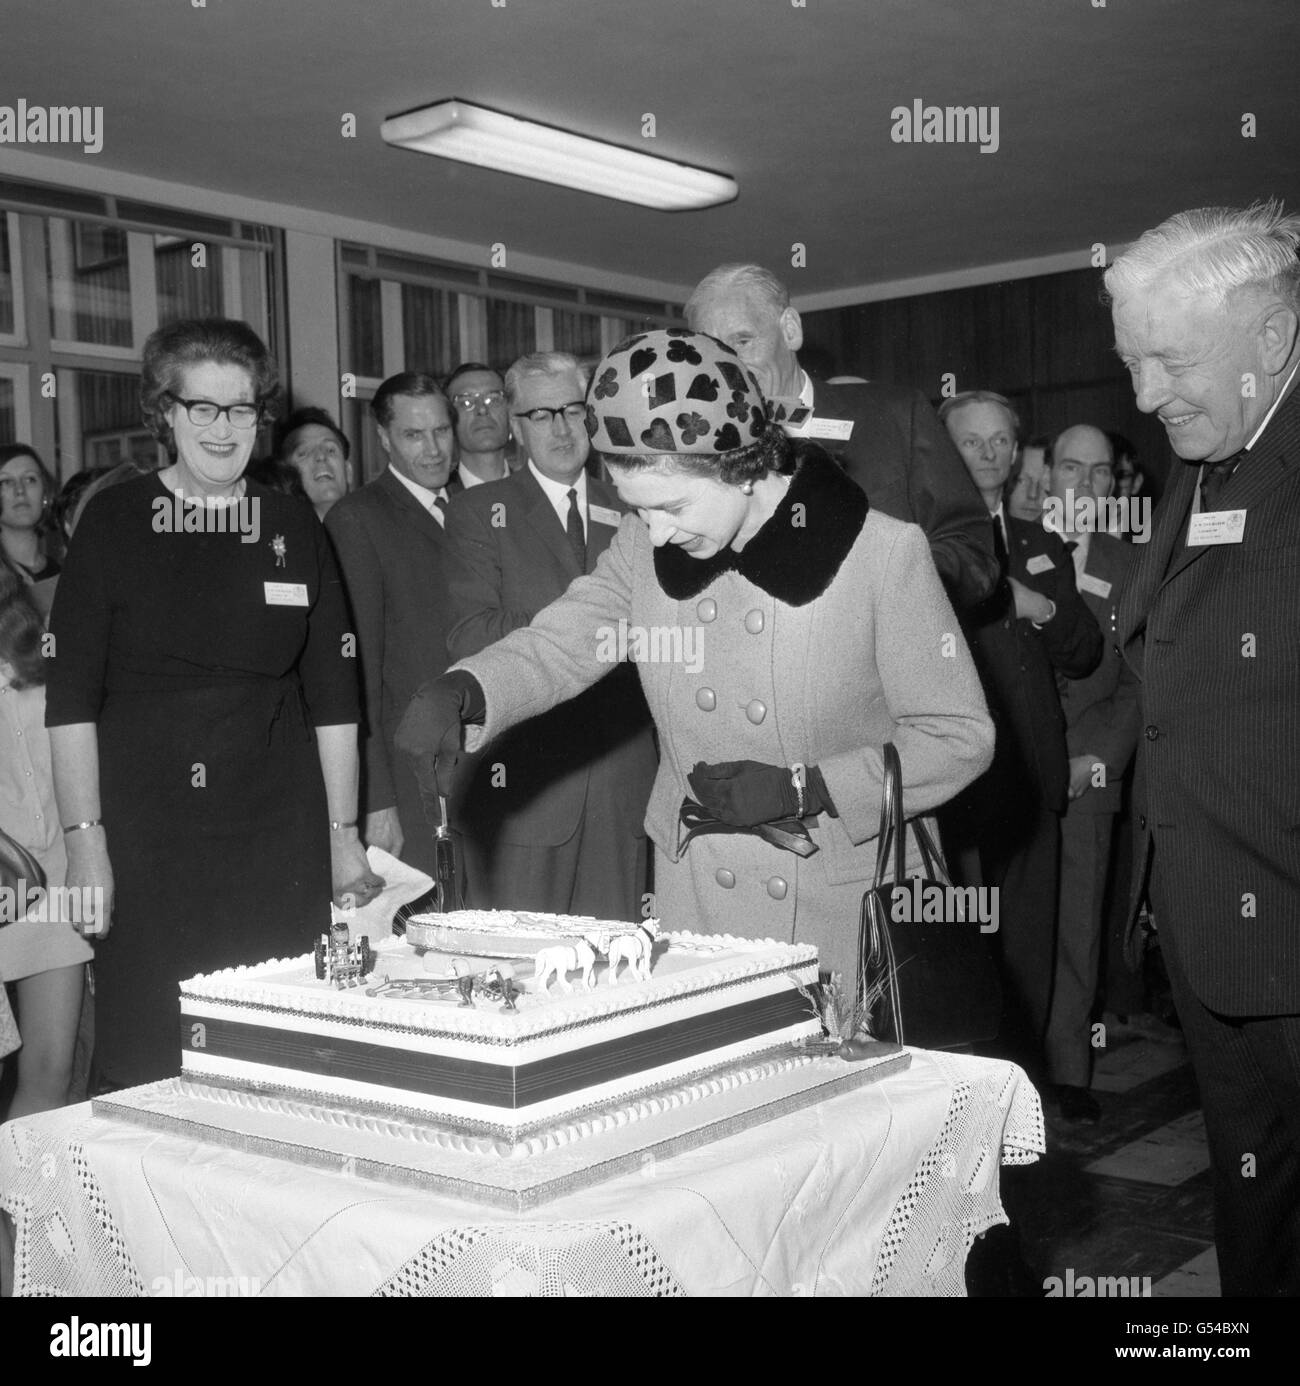 La regina Elisabetta II durante la sua visita all'Istituto Nazionale di Botanica agricola di Cambridge, dove ha tagliato una torta che segna il 50° anniversario della fondazione dell'Istituto. Foto Stock